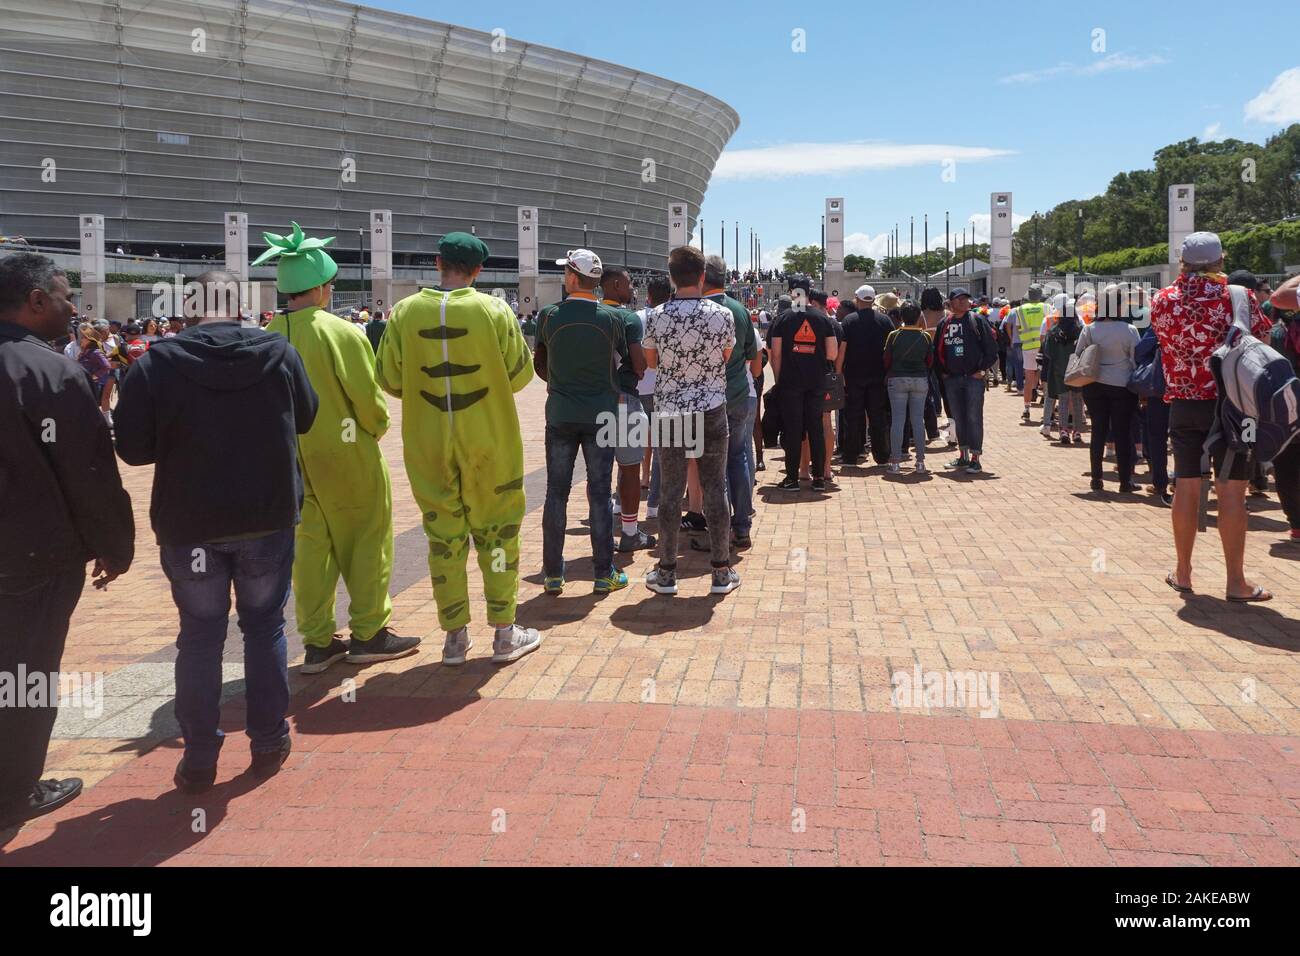 Torneo Internazionale di Rugby a sette o evento sportivo a Cape Town Stadium nel punto verde dove la gente in coda per entrare in finale di giorno corrispondono, alcuni indossare abiti fantasiosi Foto Stock